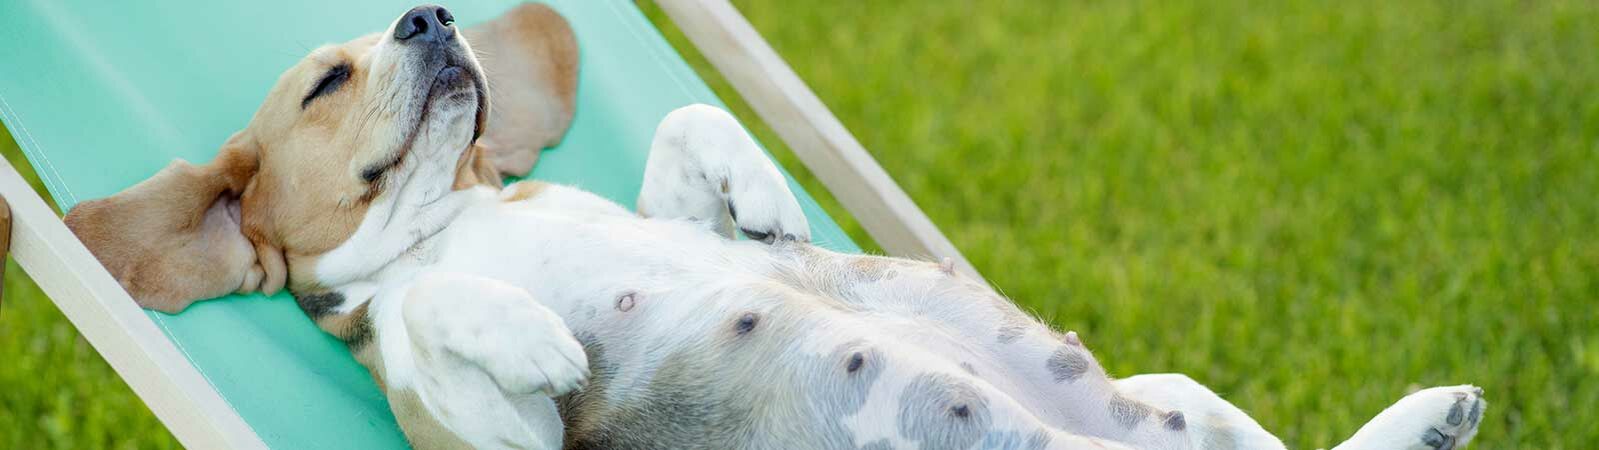 Ein trächtiger Hund liegt mit geschlossenen Augen auf einem kleinen Liegestuhl. 